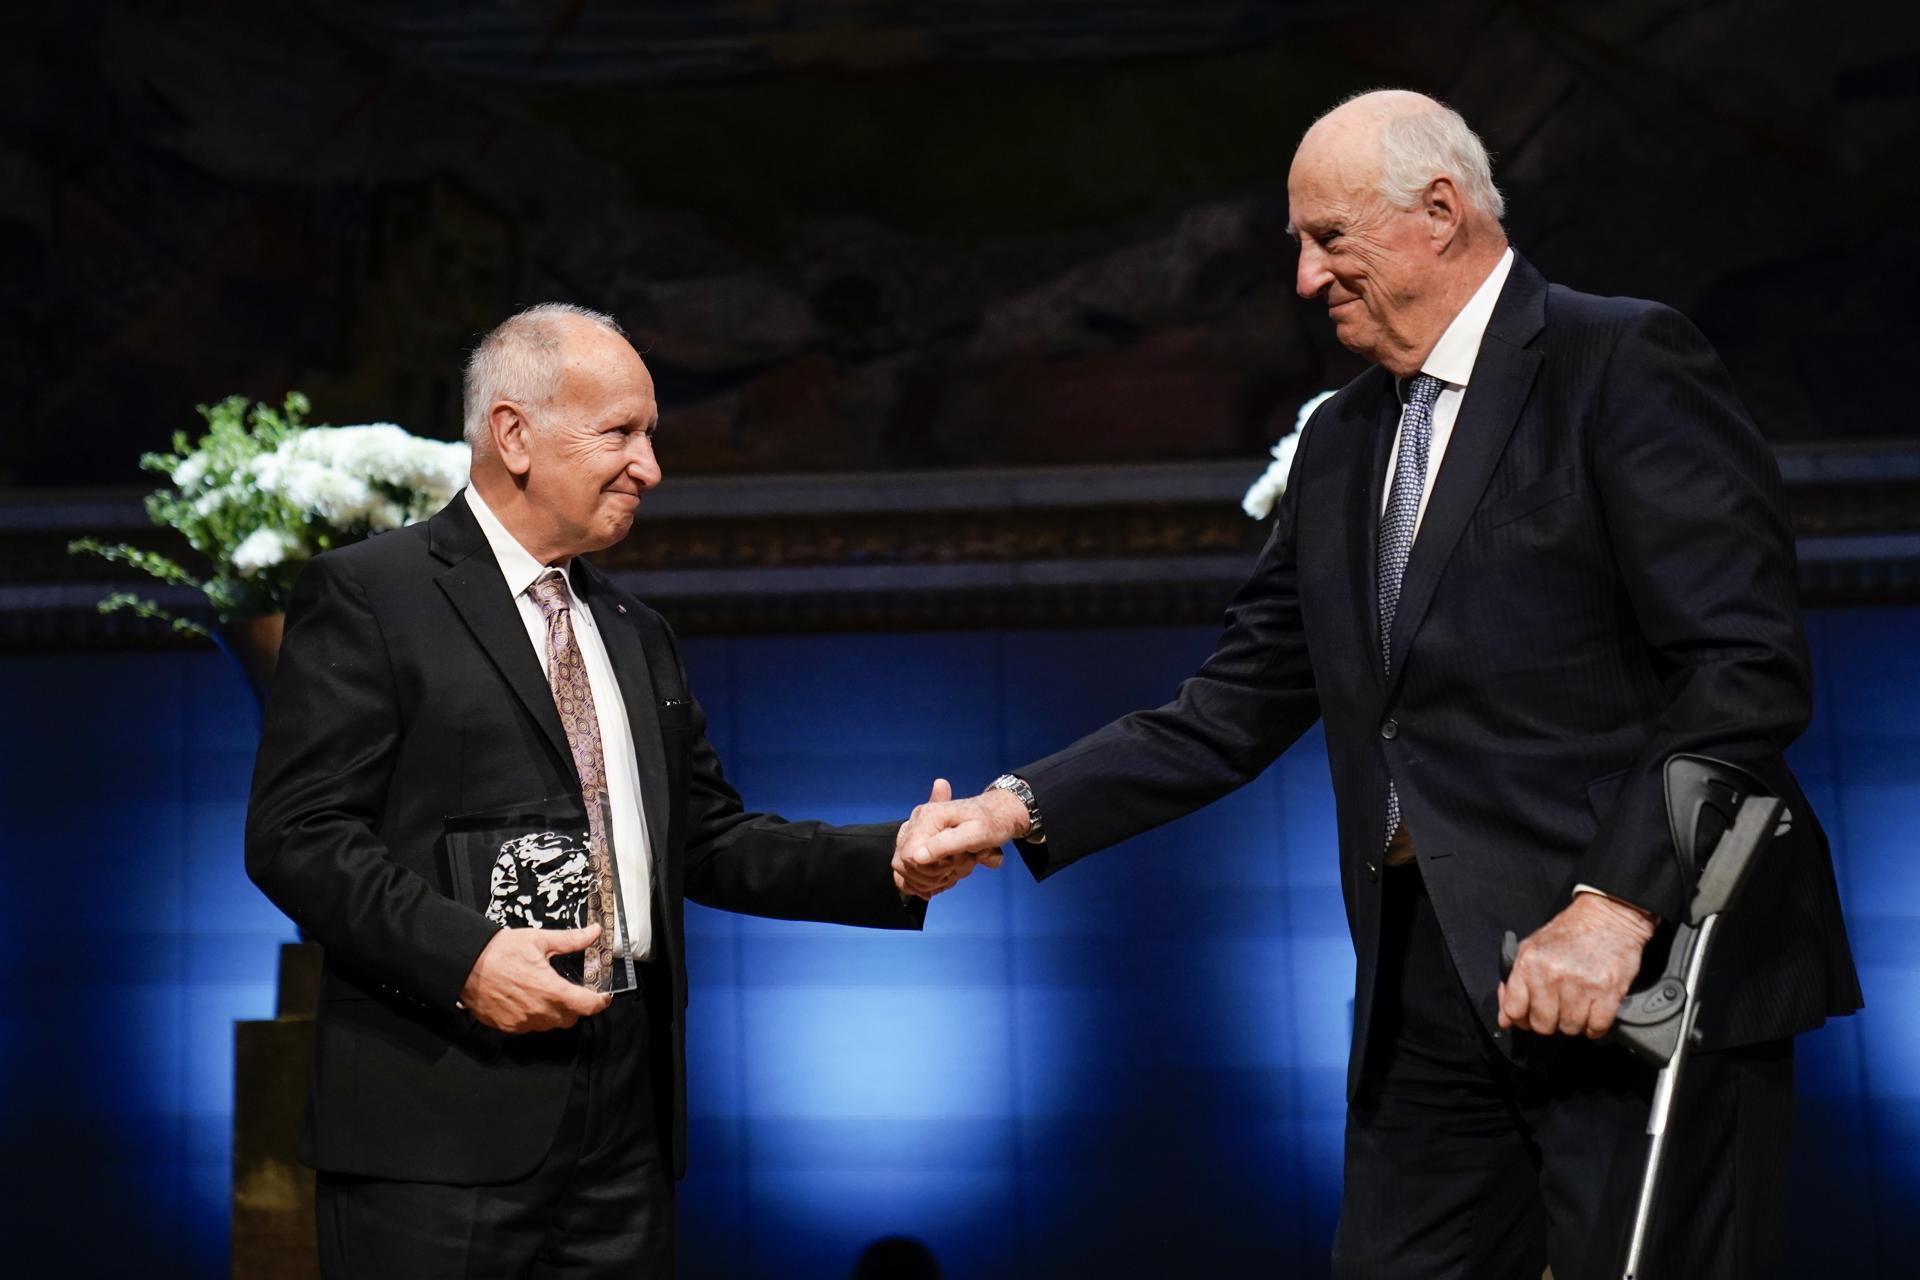 El argentino Luis Caffarelli recibió en Oslo el "Nobel" de las matemáticas